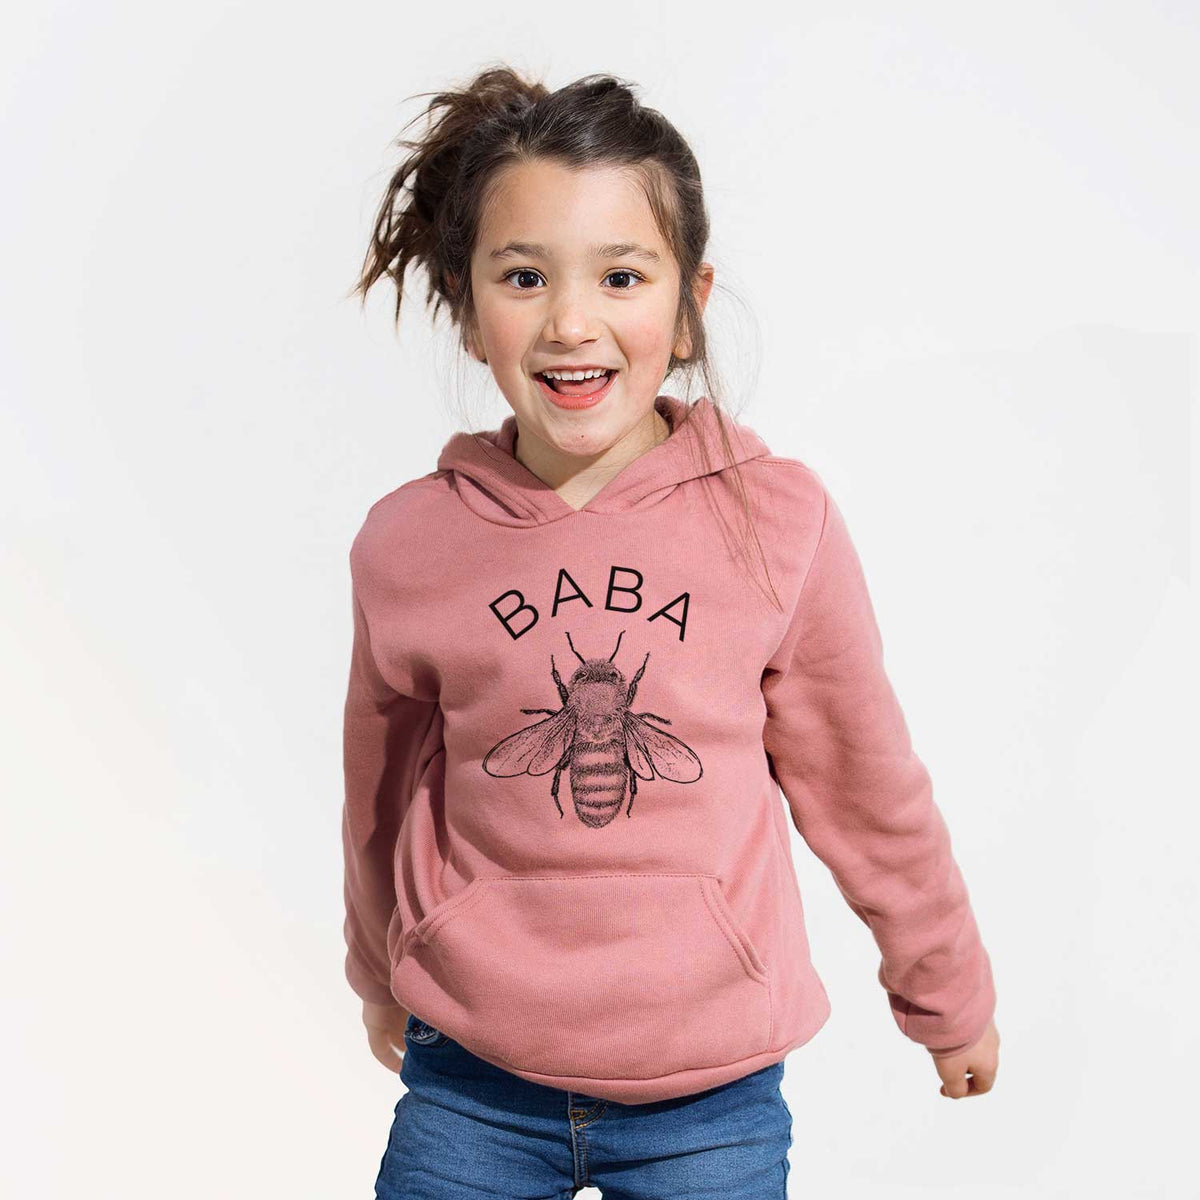 Baba Bee - Youth Hoodie Sweatshirt